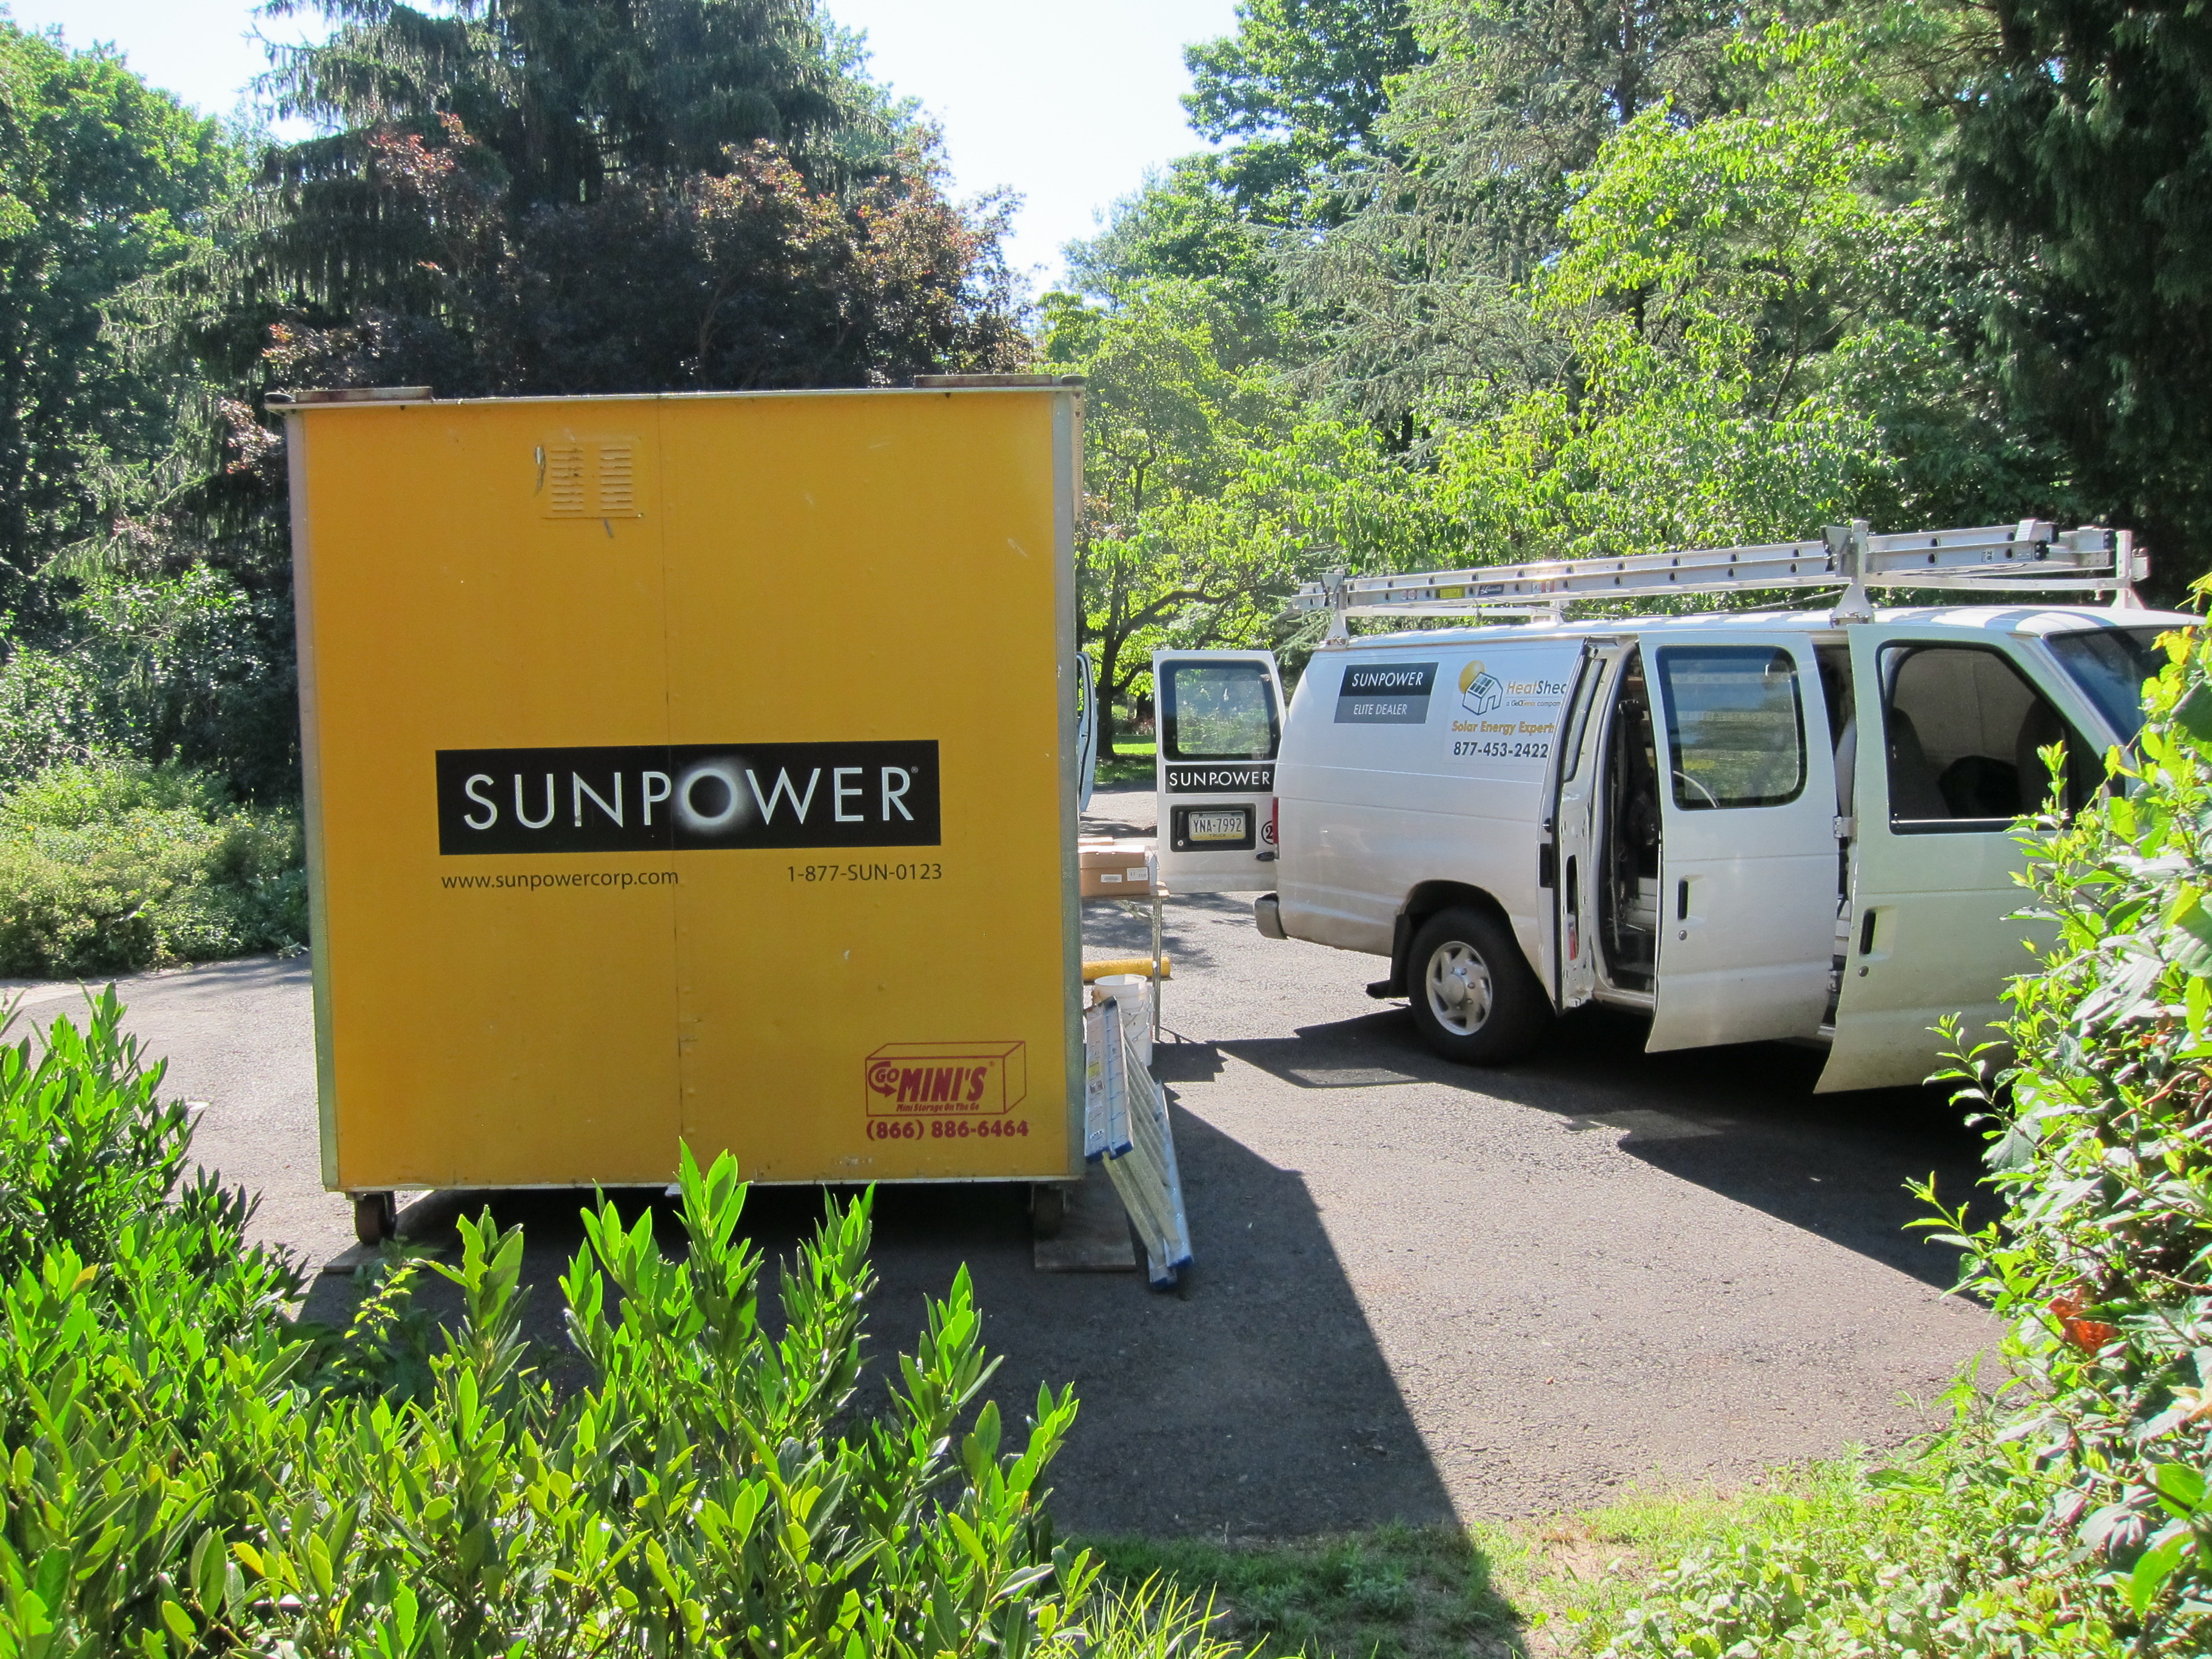 The Sunpower "POD" full of solar panels